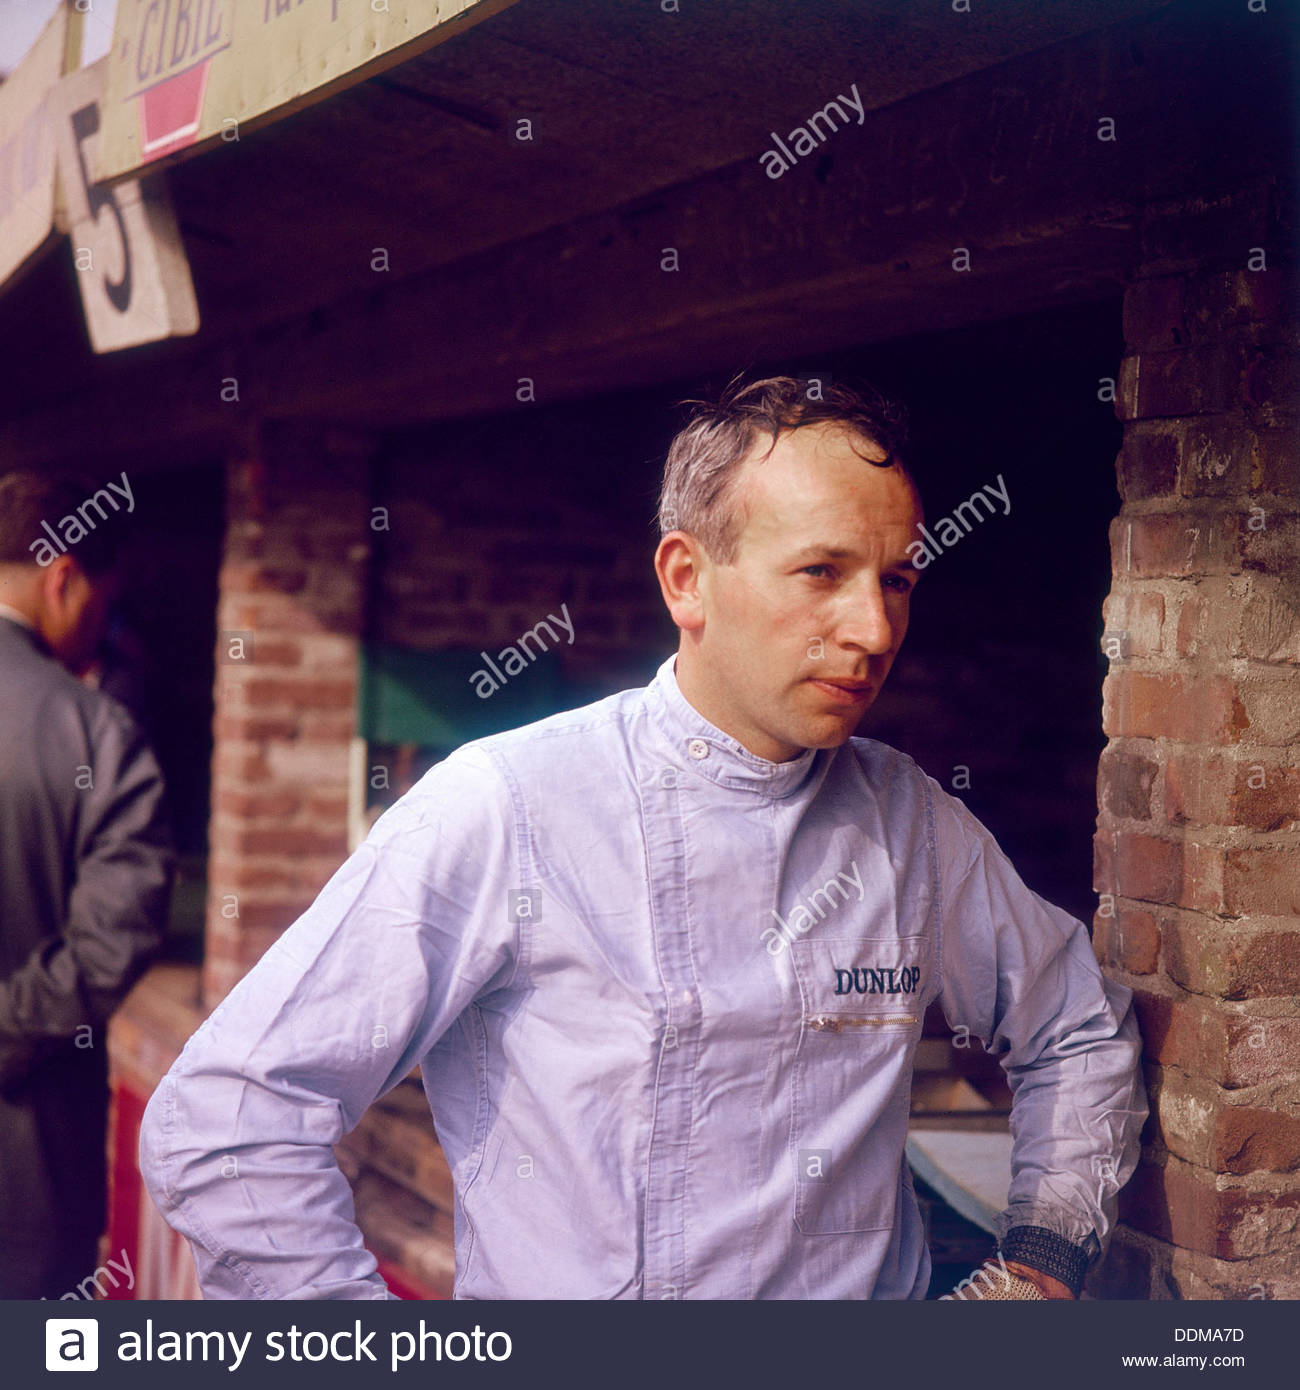 John Surtees.